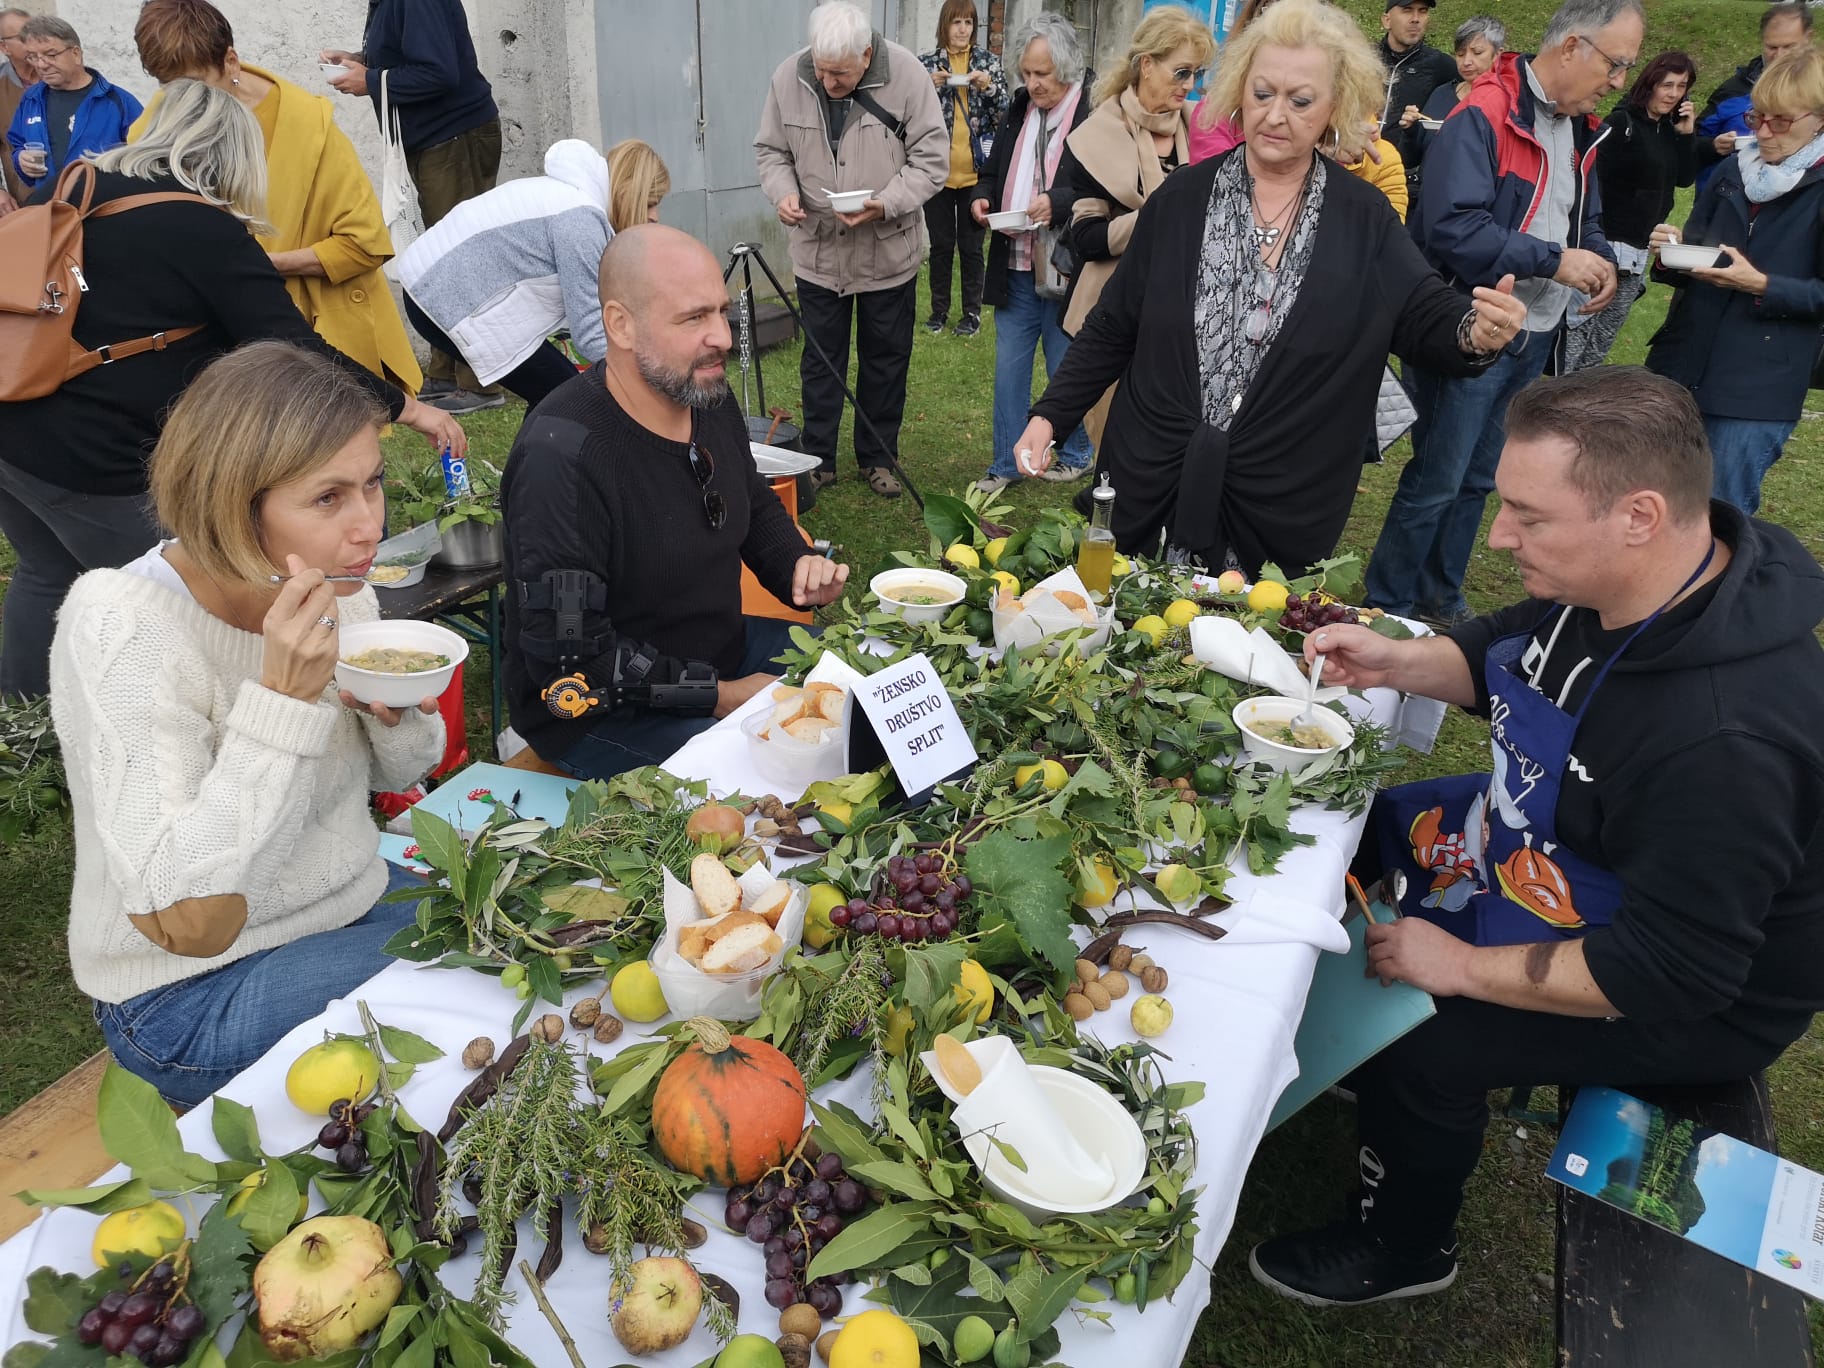 UŽITAK U PRIRODI – Festival gljiva, vune i plodova jeseni